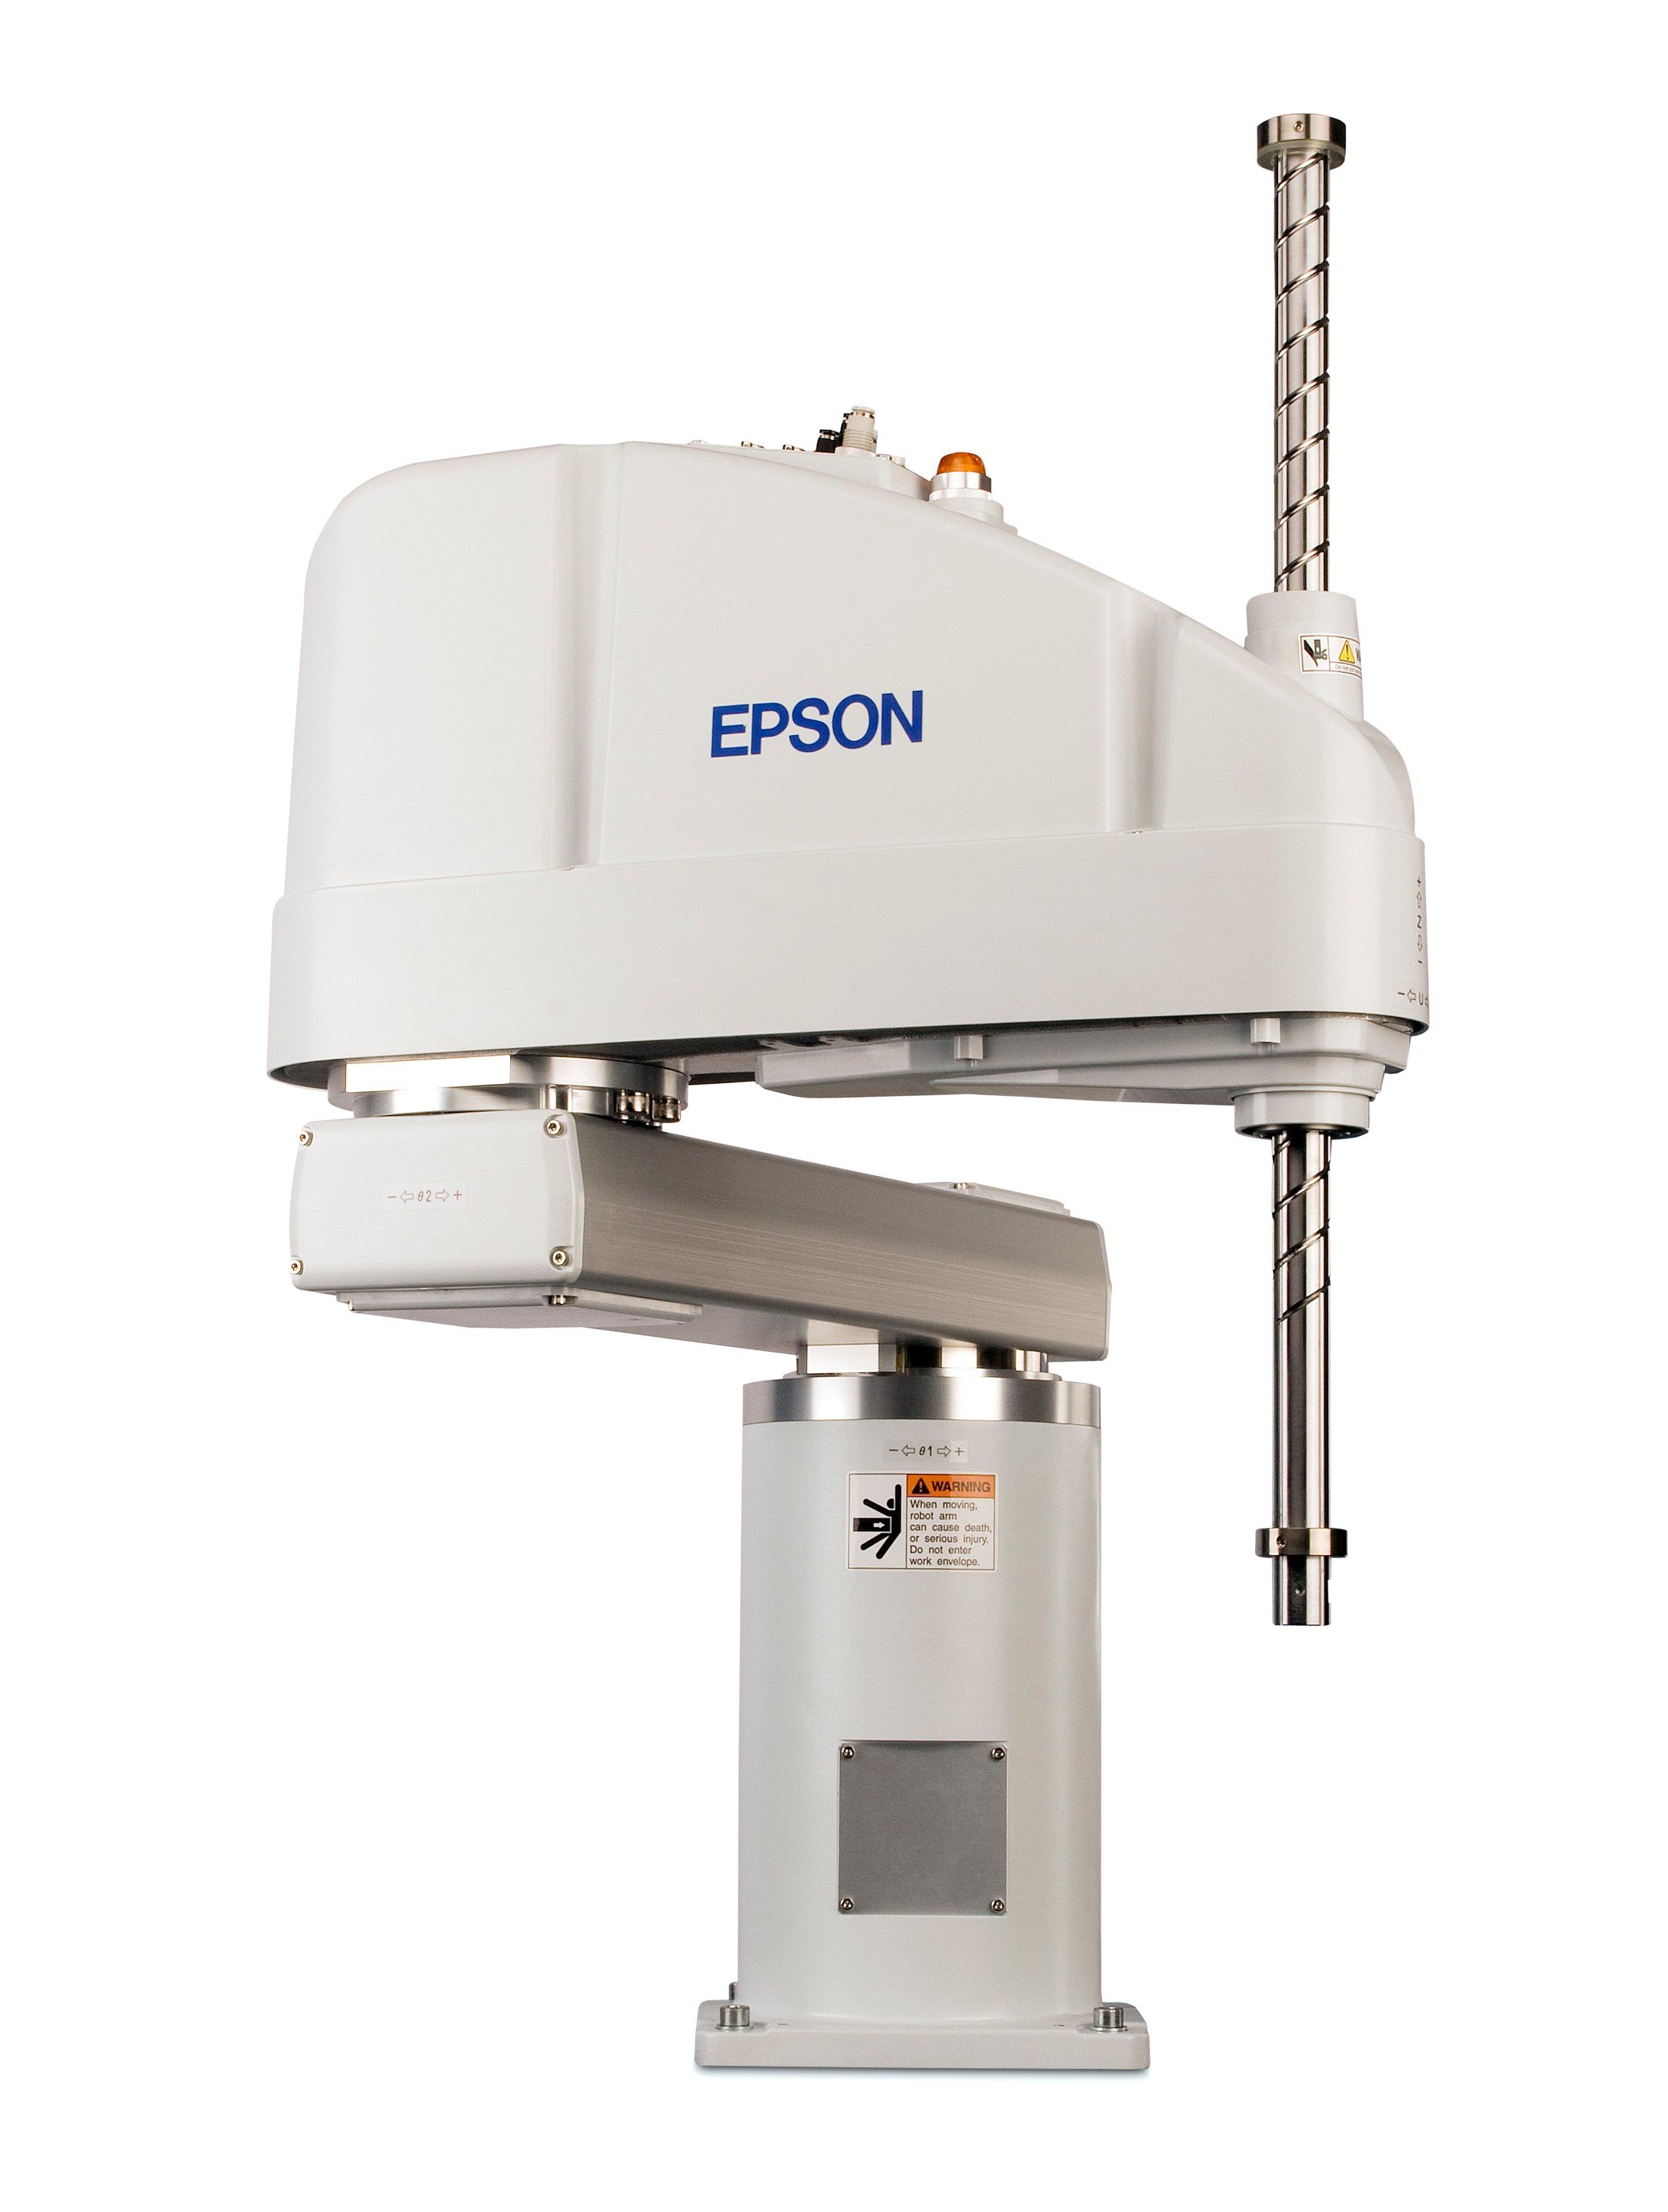 Epson Scara G10 650mm Series | SCARA Robots | Roboty | Produkty | Epson ...